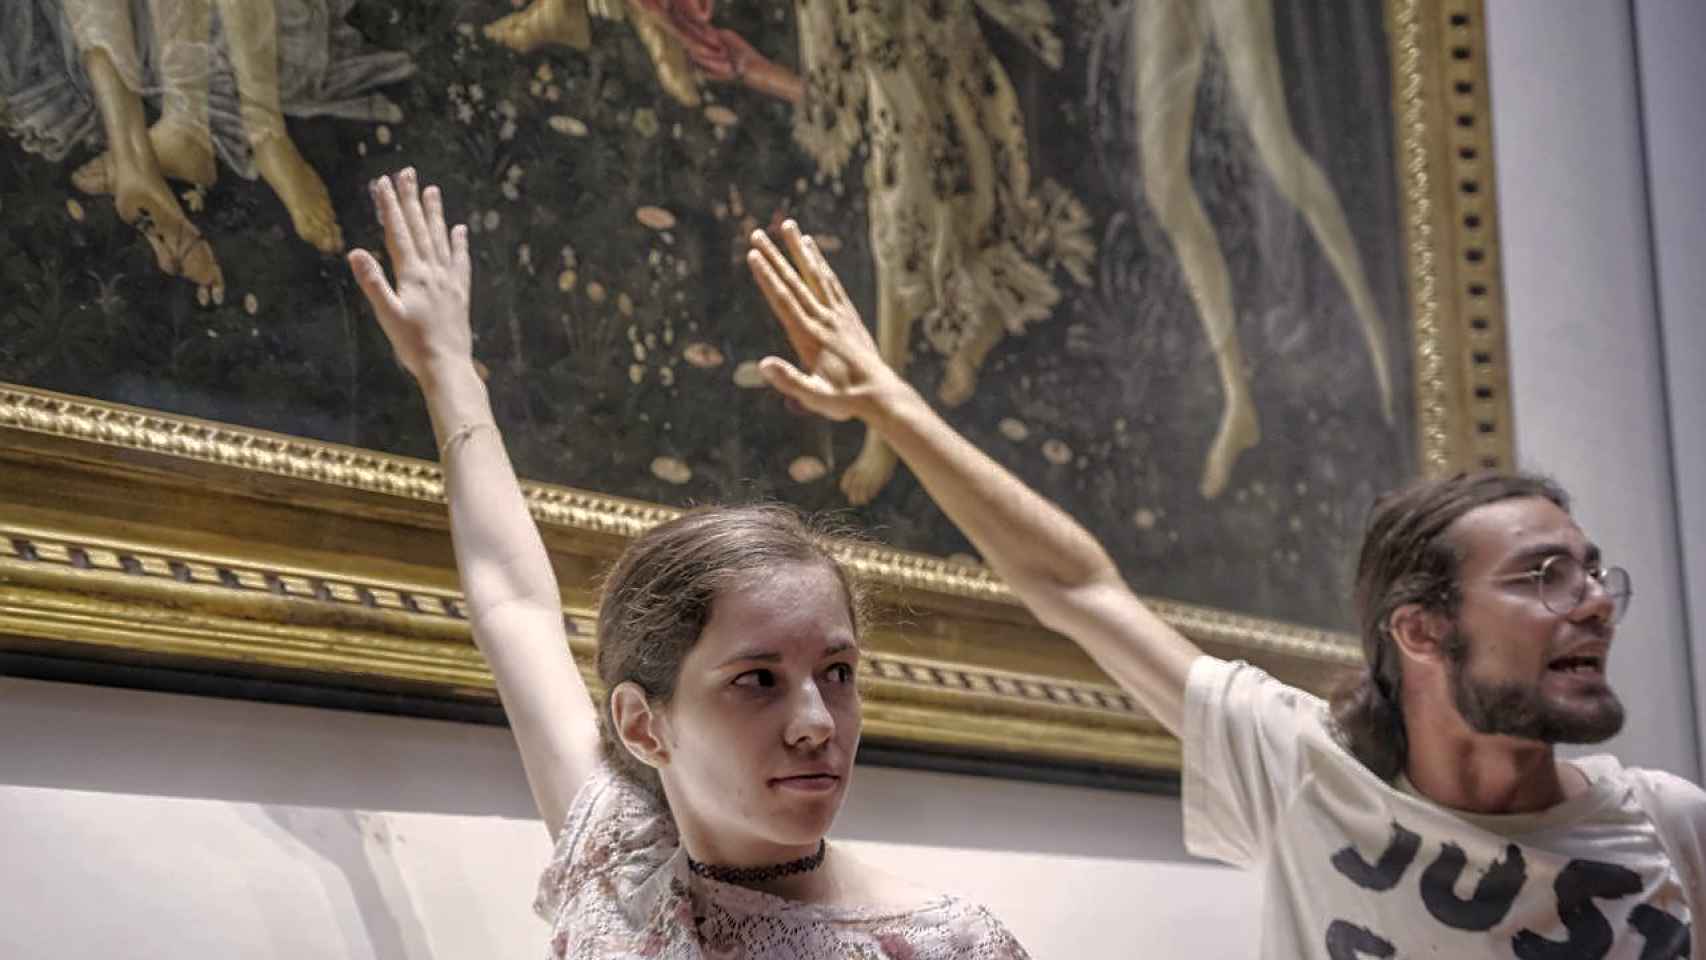 Los activistas pegan sus manos en la cubierta de ‘La primavera’ de Sandro Botticelli. Foto: Ultima Generazione